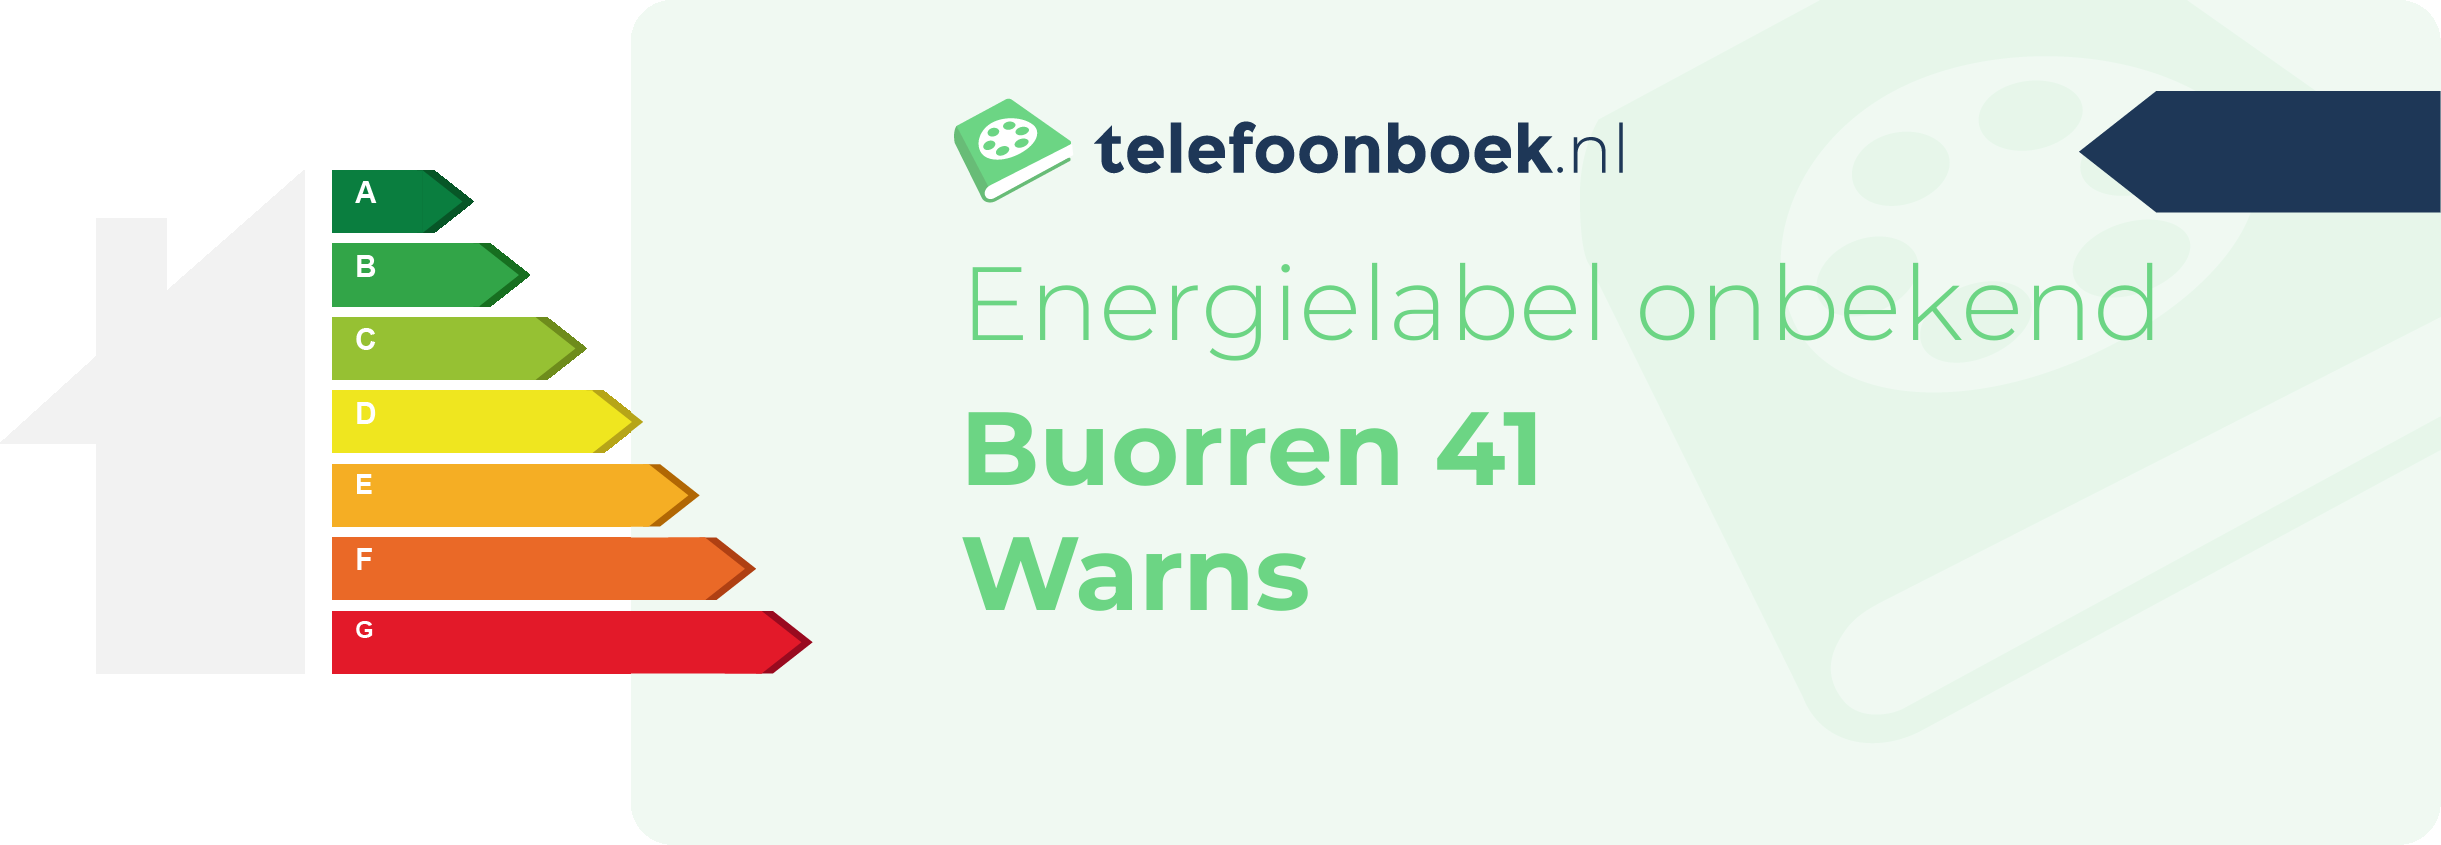 Energielabel Buorren 41 Warns